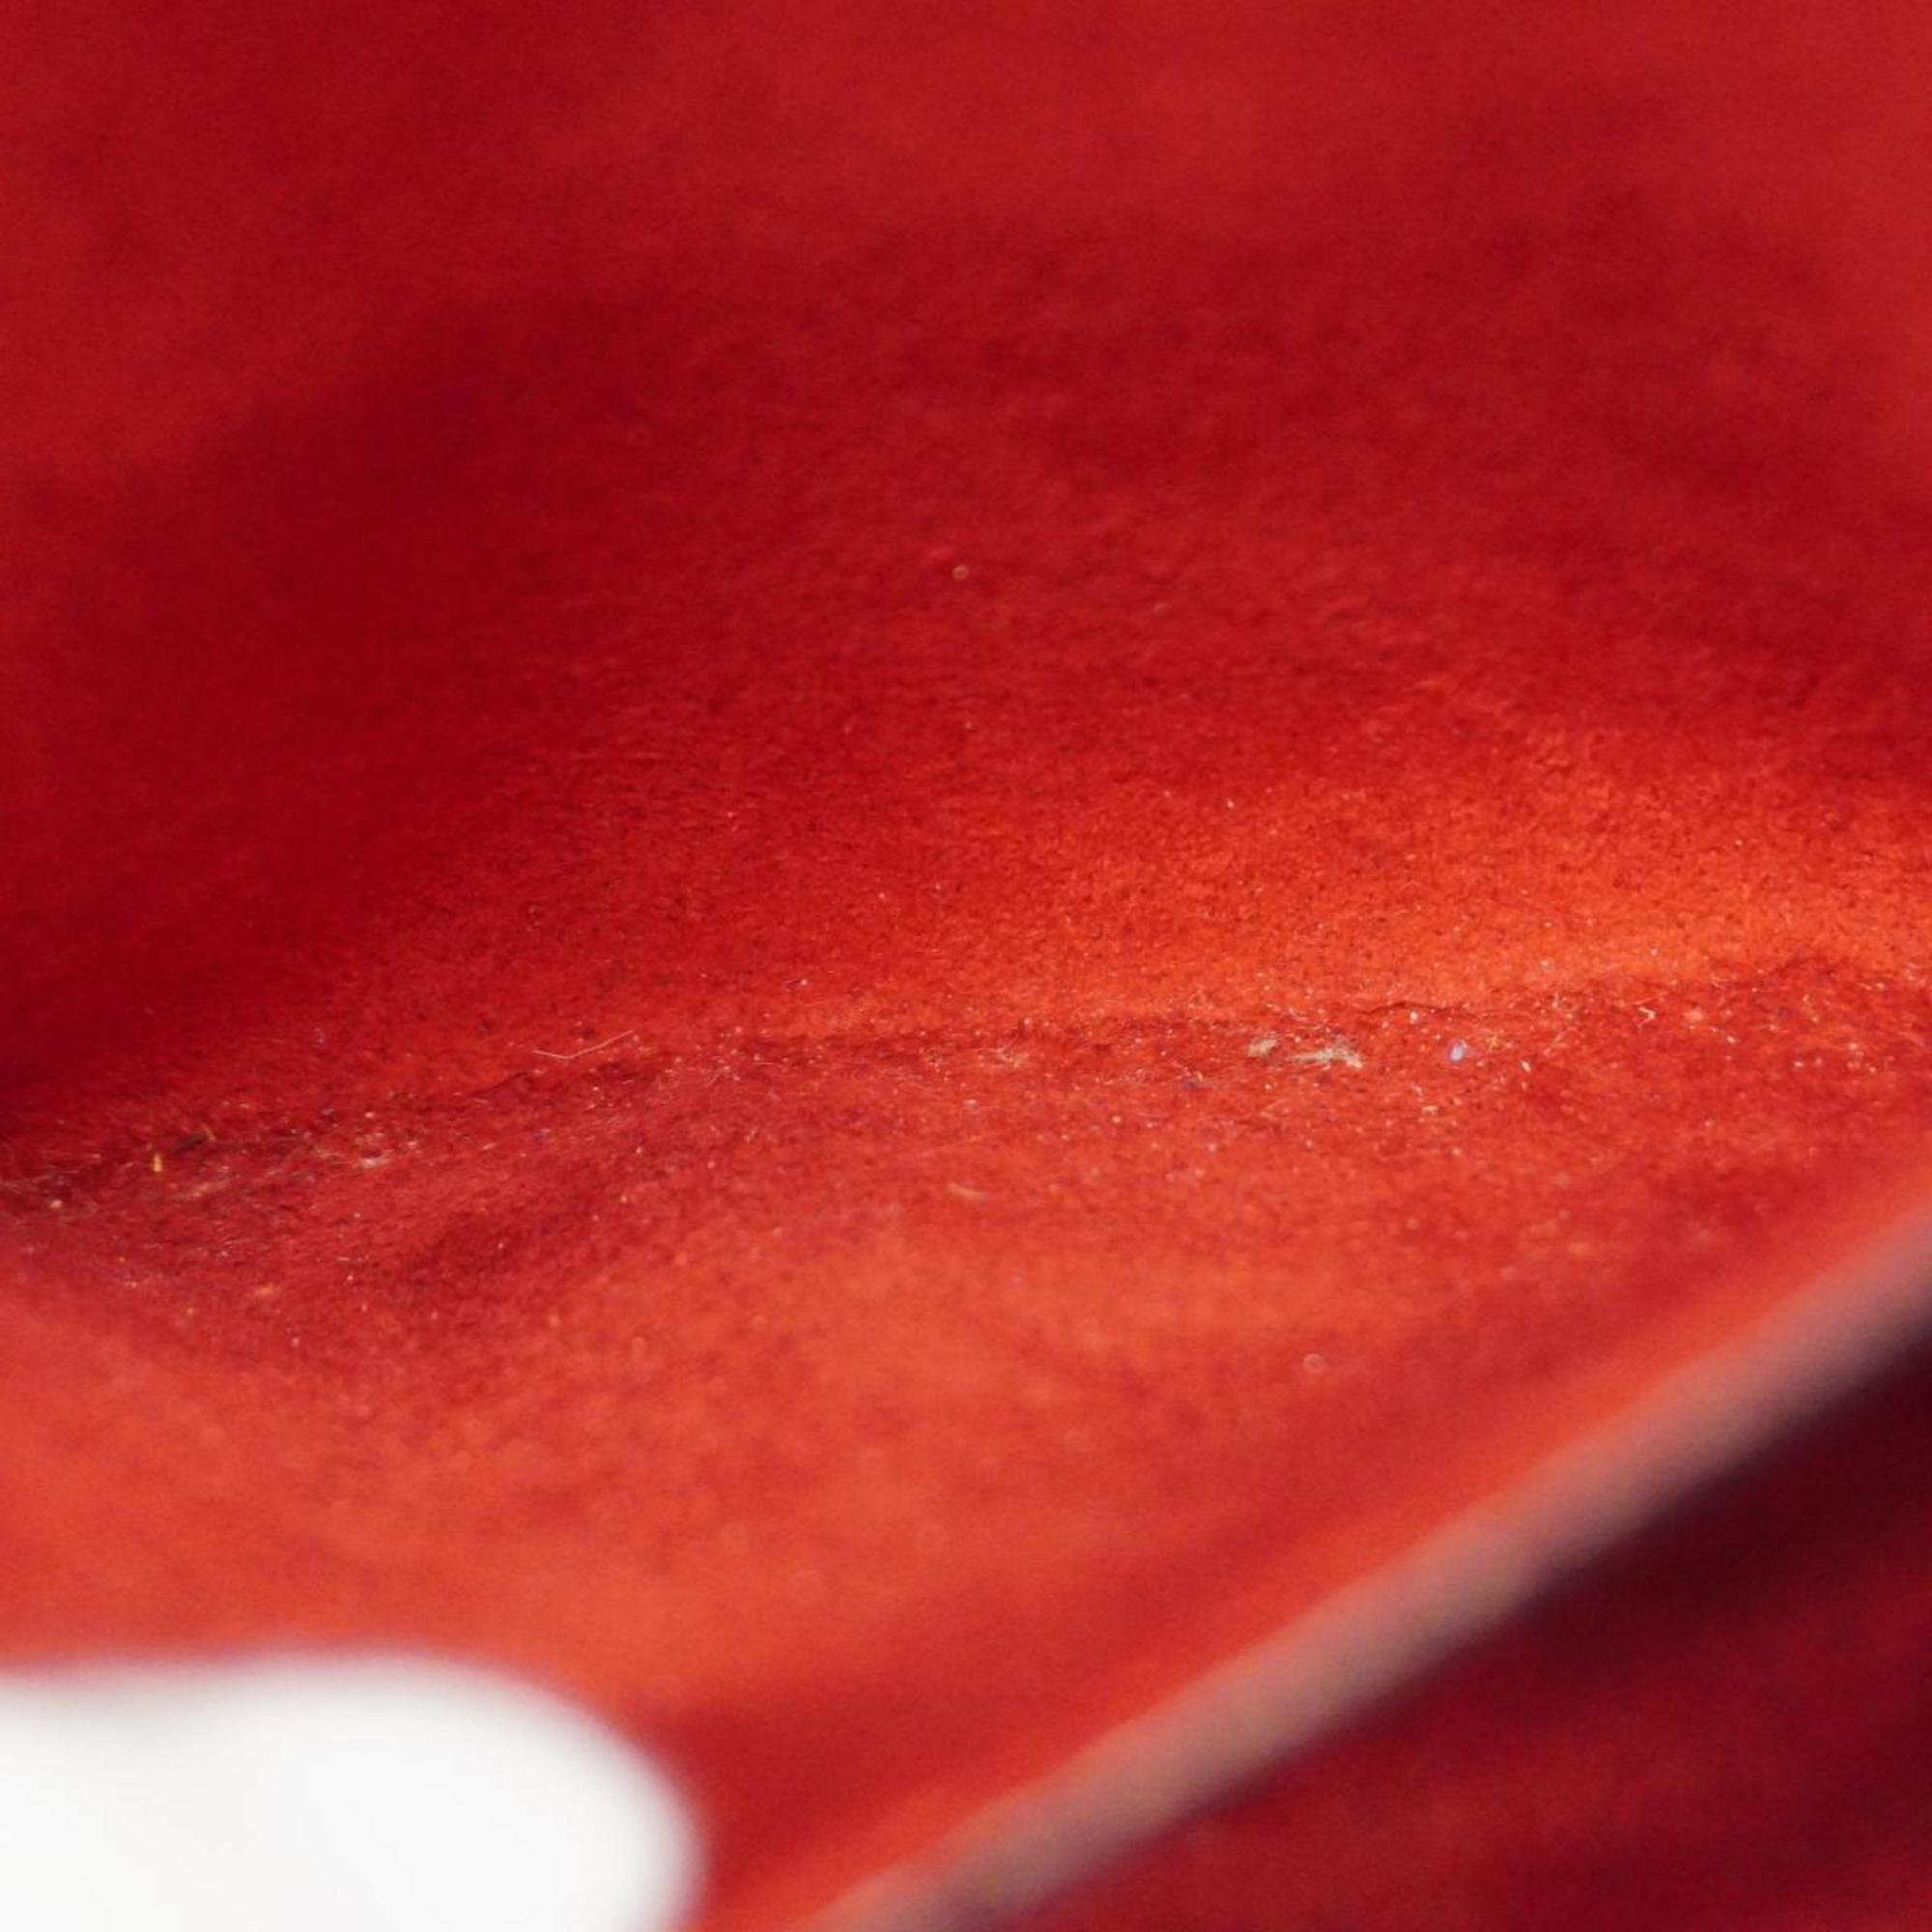 Louis Vuitton Shoulder Bag Epi Saint Jacques Poigner Long M52337 Castilian Red Women's